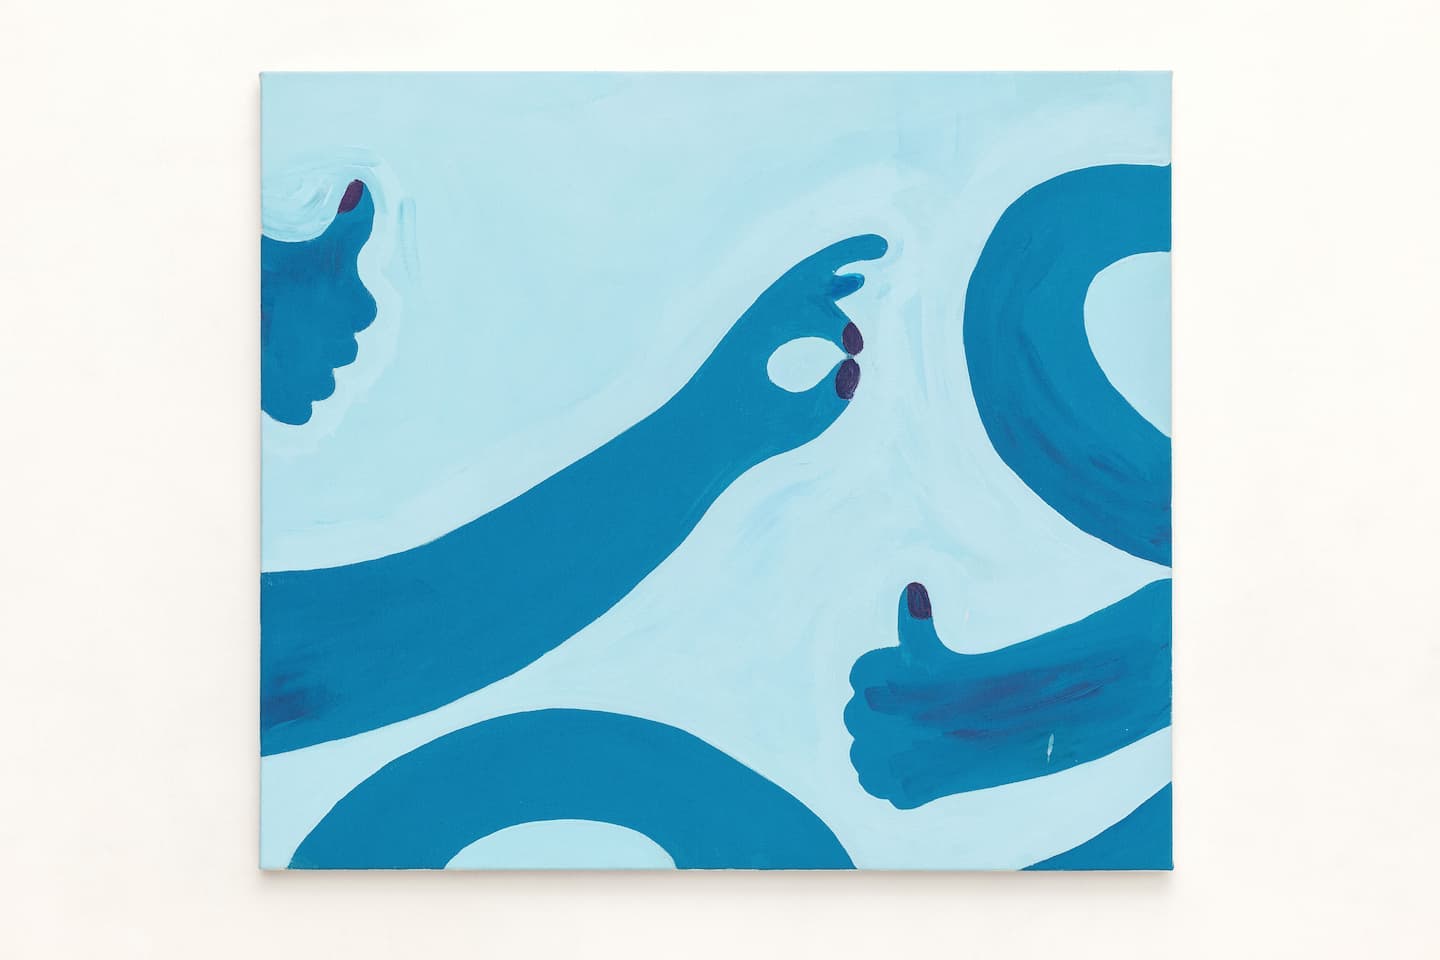 Camila Oliveira Fairclough, Hands mind. 2019. Acrylique sur toile, 70 x 80 cm. Achat à la galerie Laurent Gaudin. Collection Frac île-de-france. ©DR